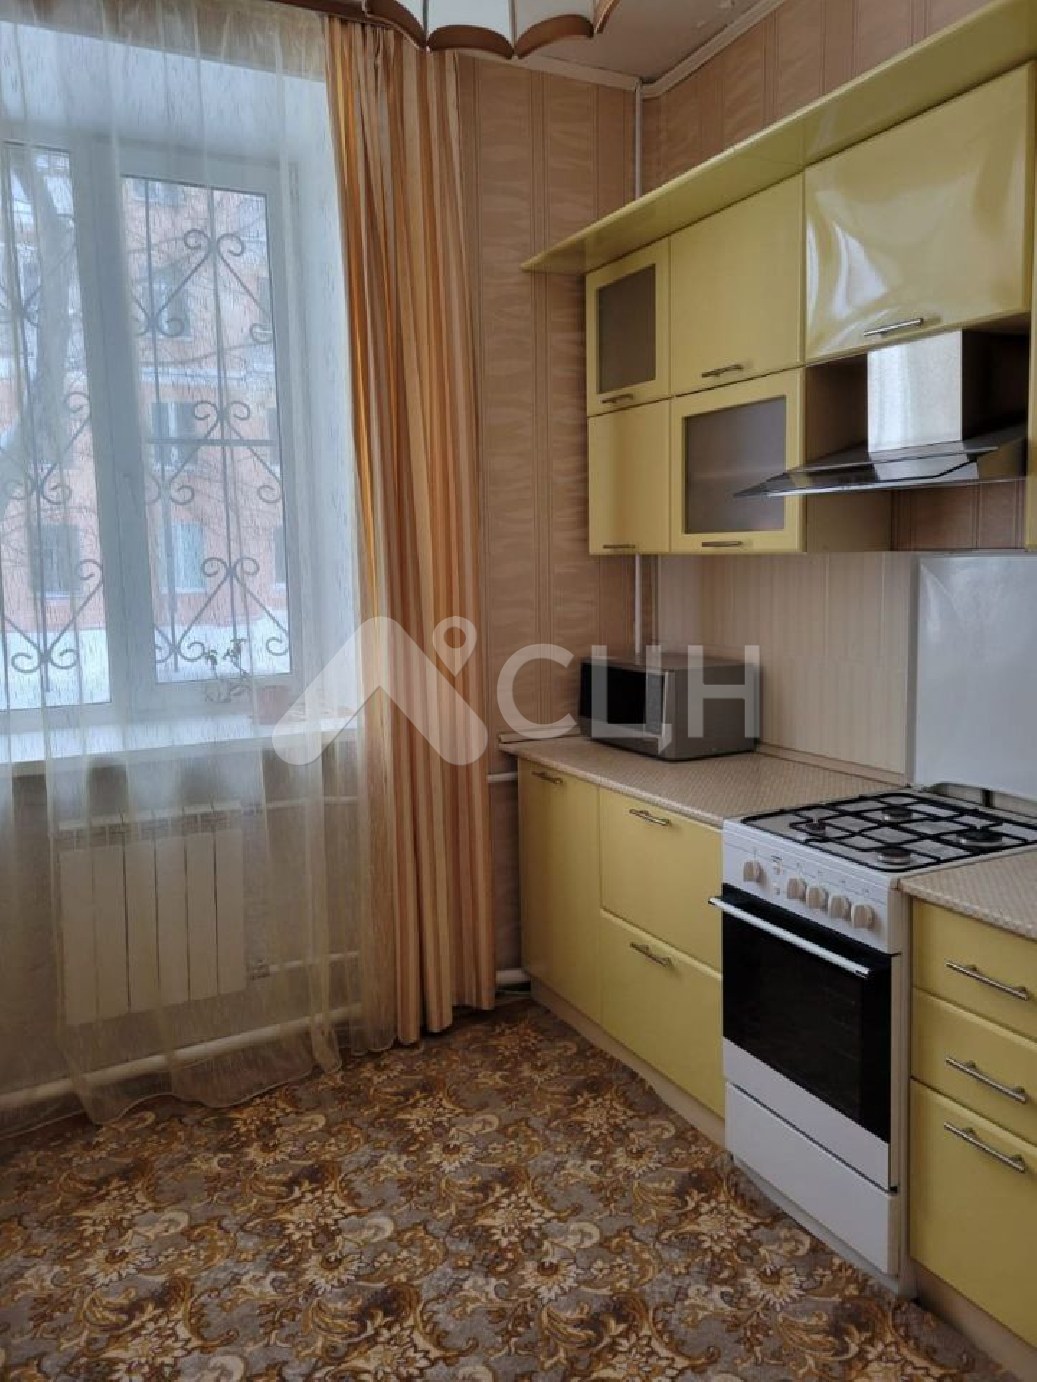 циан саров квартиры
: Г. Саров, проспект Ленина, 8, 3-комн квартира, этаж 1 из 4, продажа.